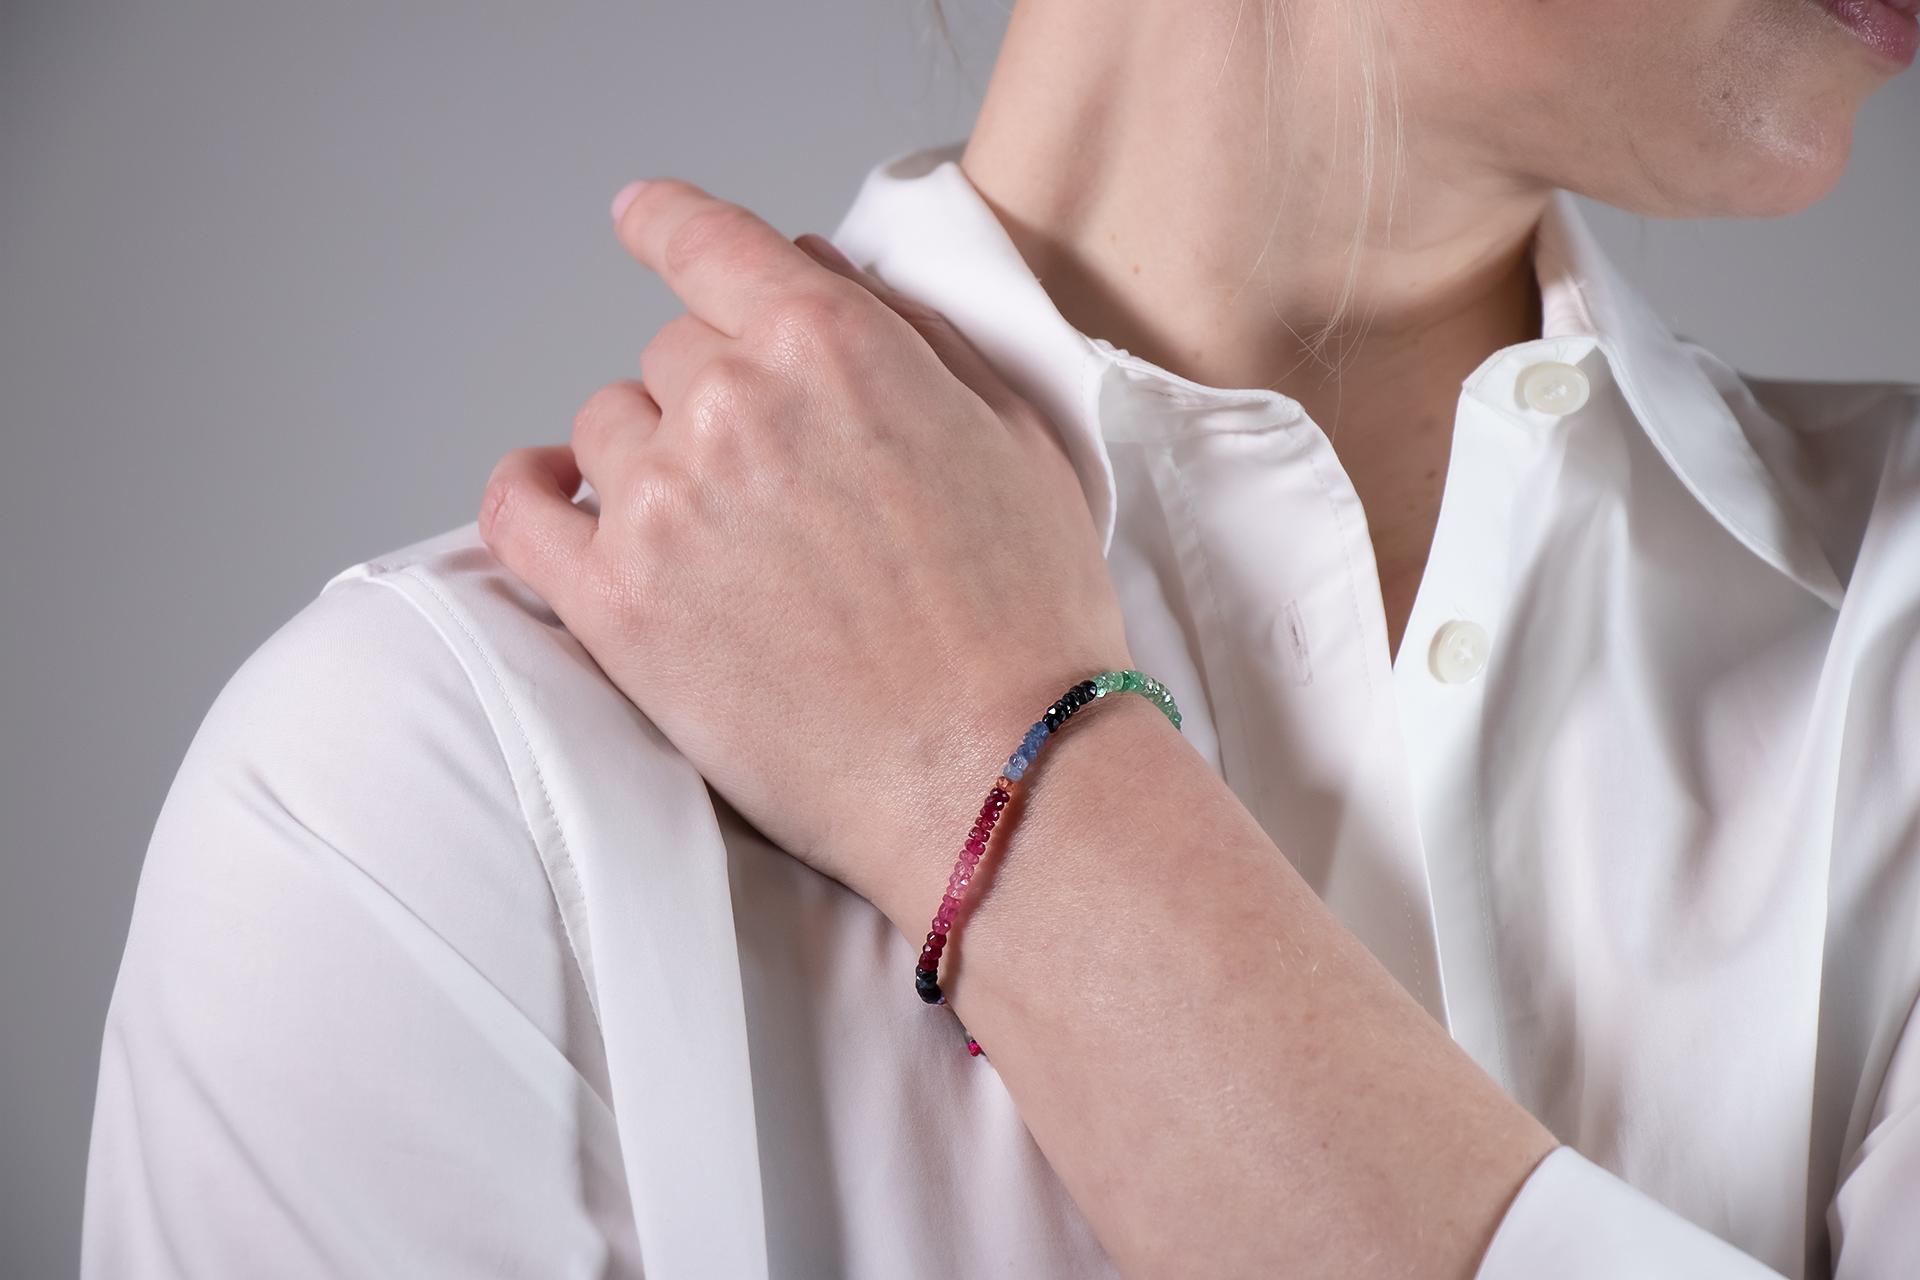 Ce bracelet combine tout dans les couleurs de la palette. Des rubis rouges aux saphirs roses, jaunes et bleus, en passant par les émeraudes vertes. Il ne devrait manquer dans aucune boîte à bijoux et peut tout simplement être combiné avec tout.
Il